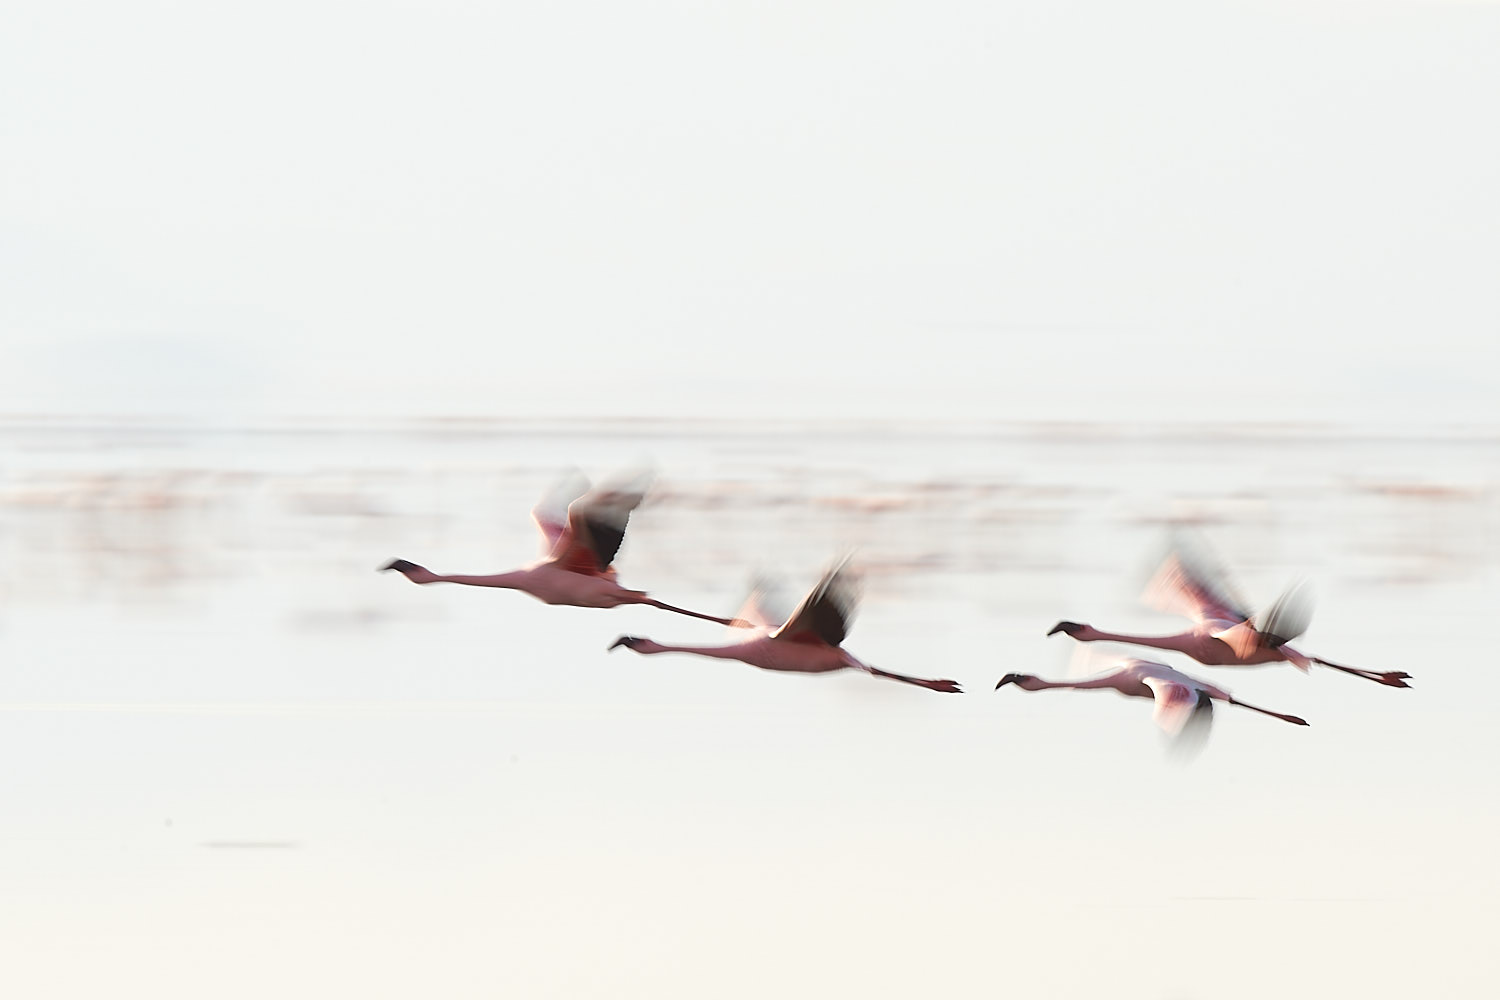 flamingo natron lake